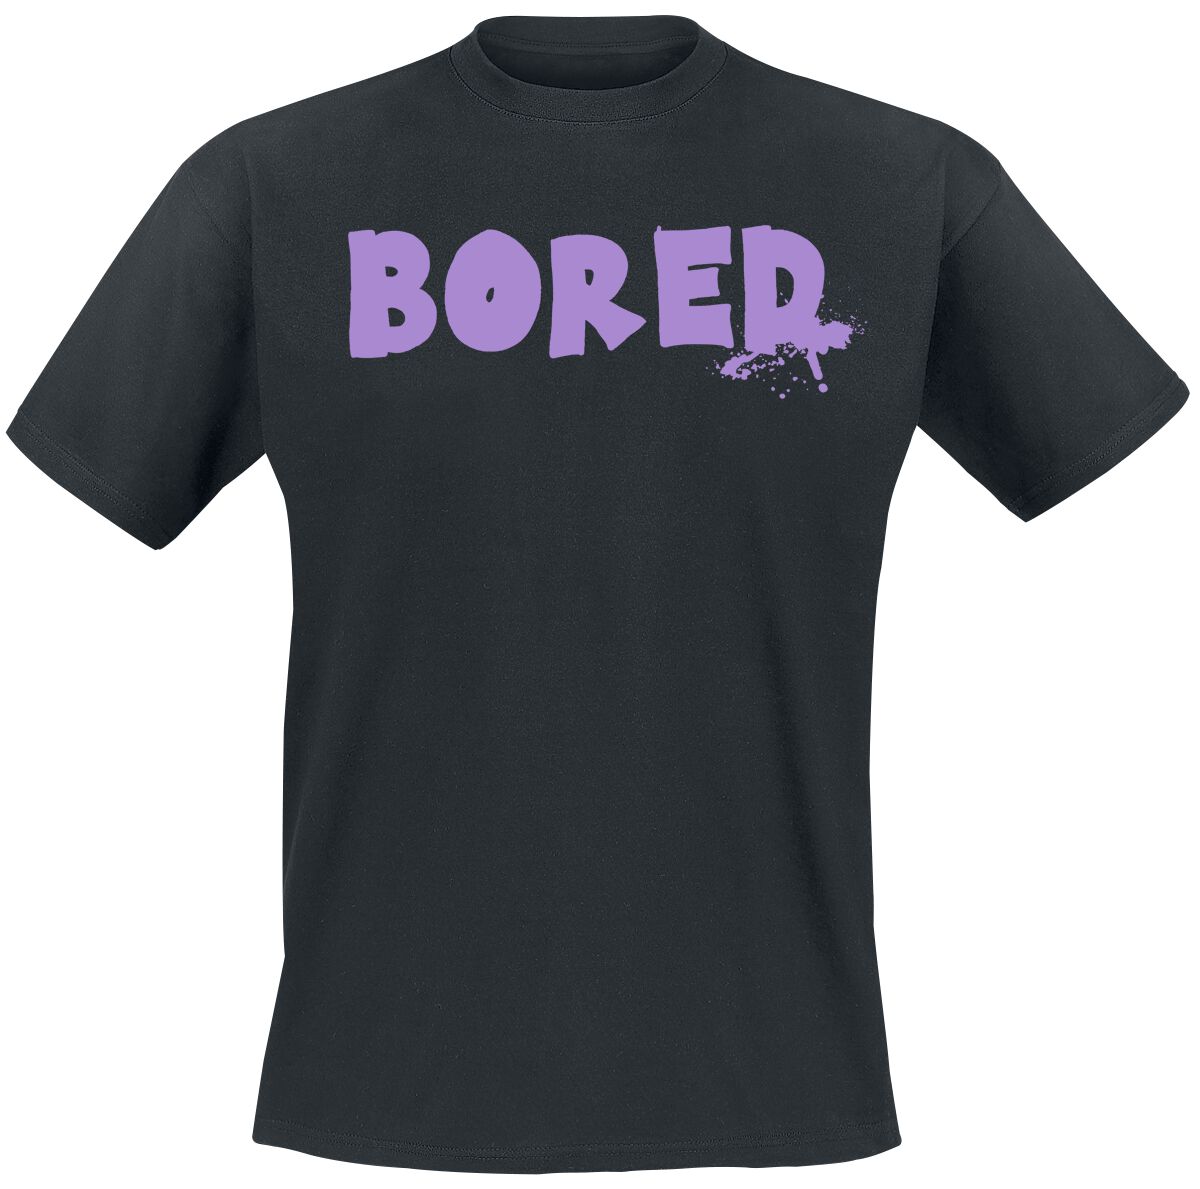 Bored Of Directors T-Shirt - Bored Capeton - S bis XXL - für Männer - Größe M - schwarz  - EMP exklusives Merchandise!